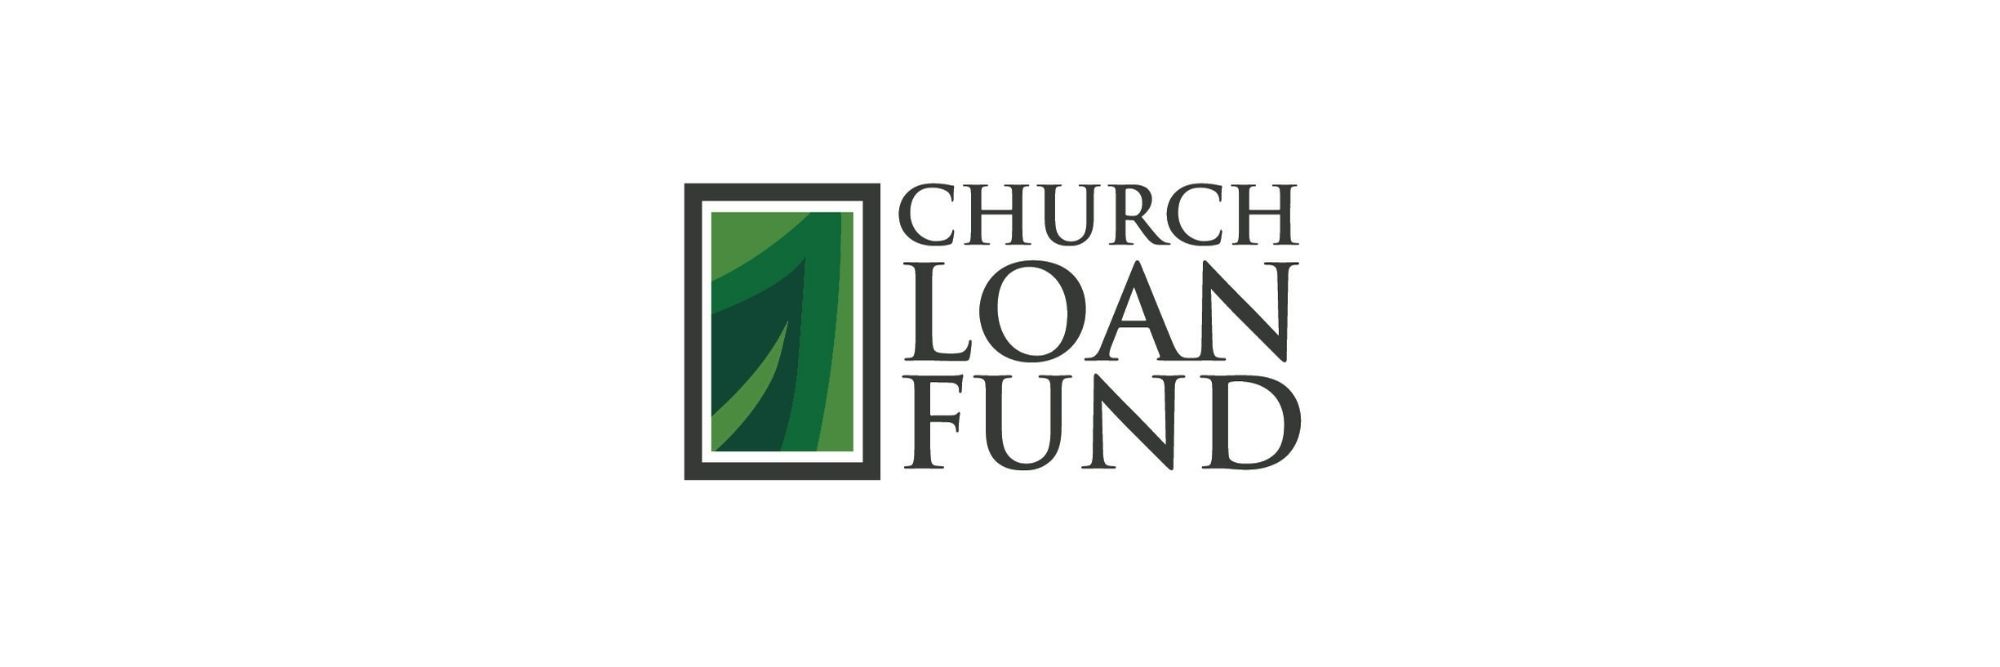 Church Loan Fund